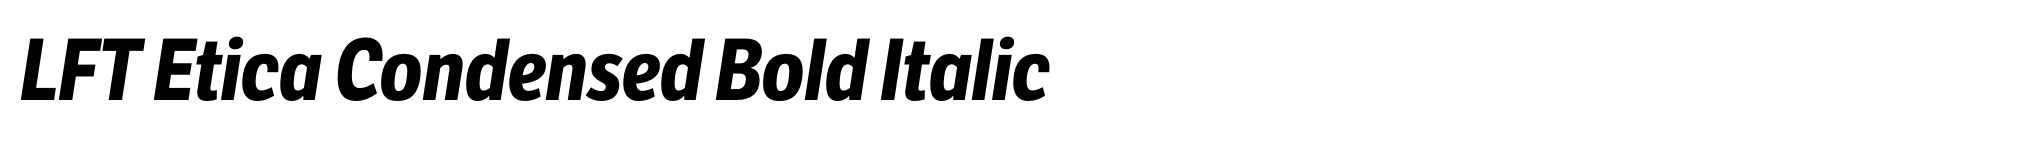 LFT Etica Condensed Bold Italic image